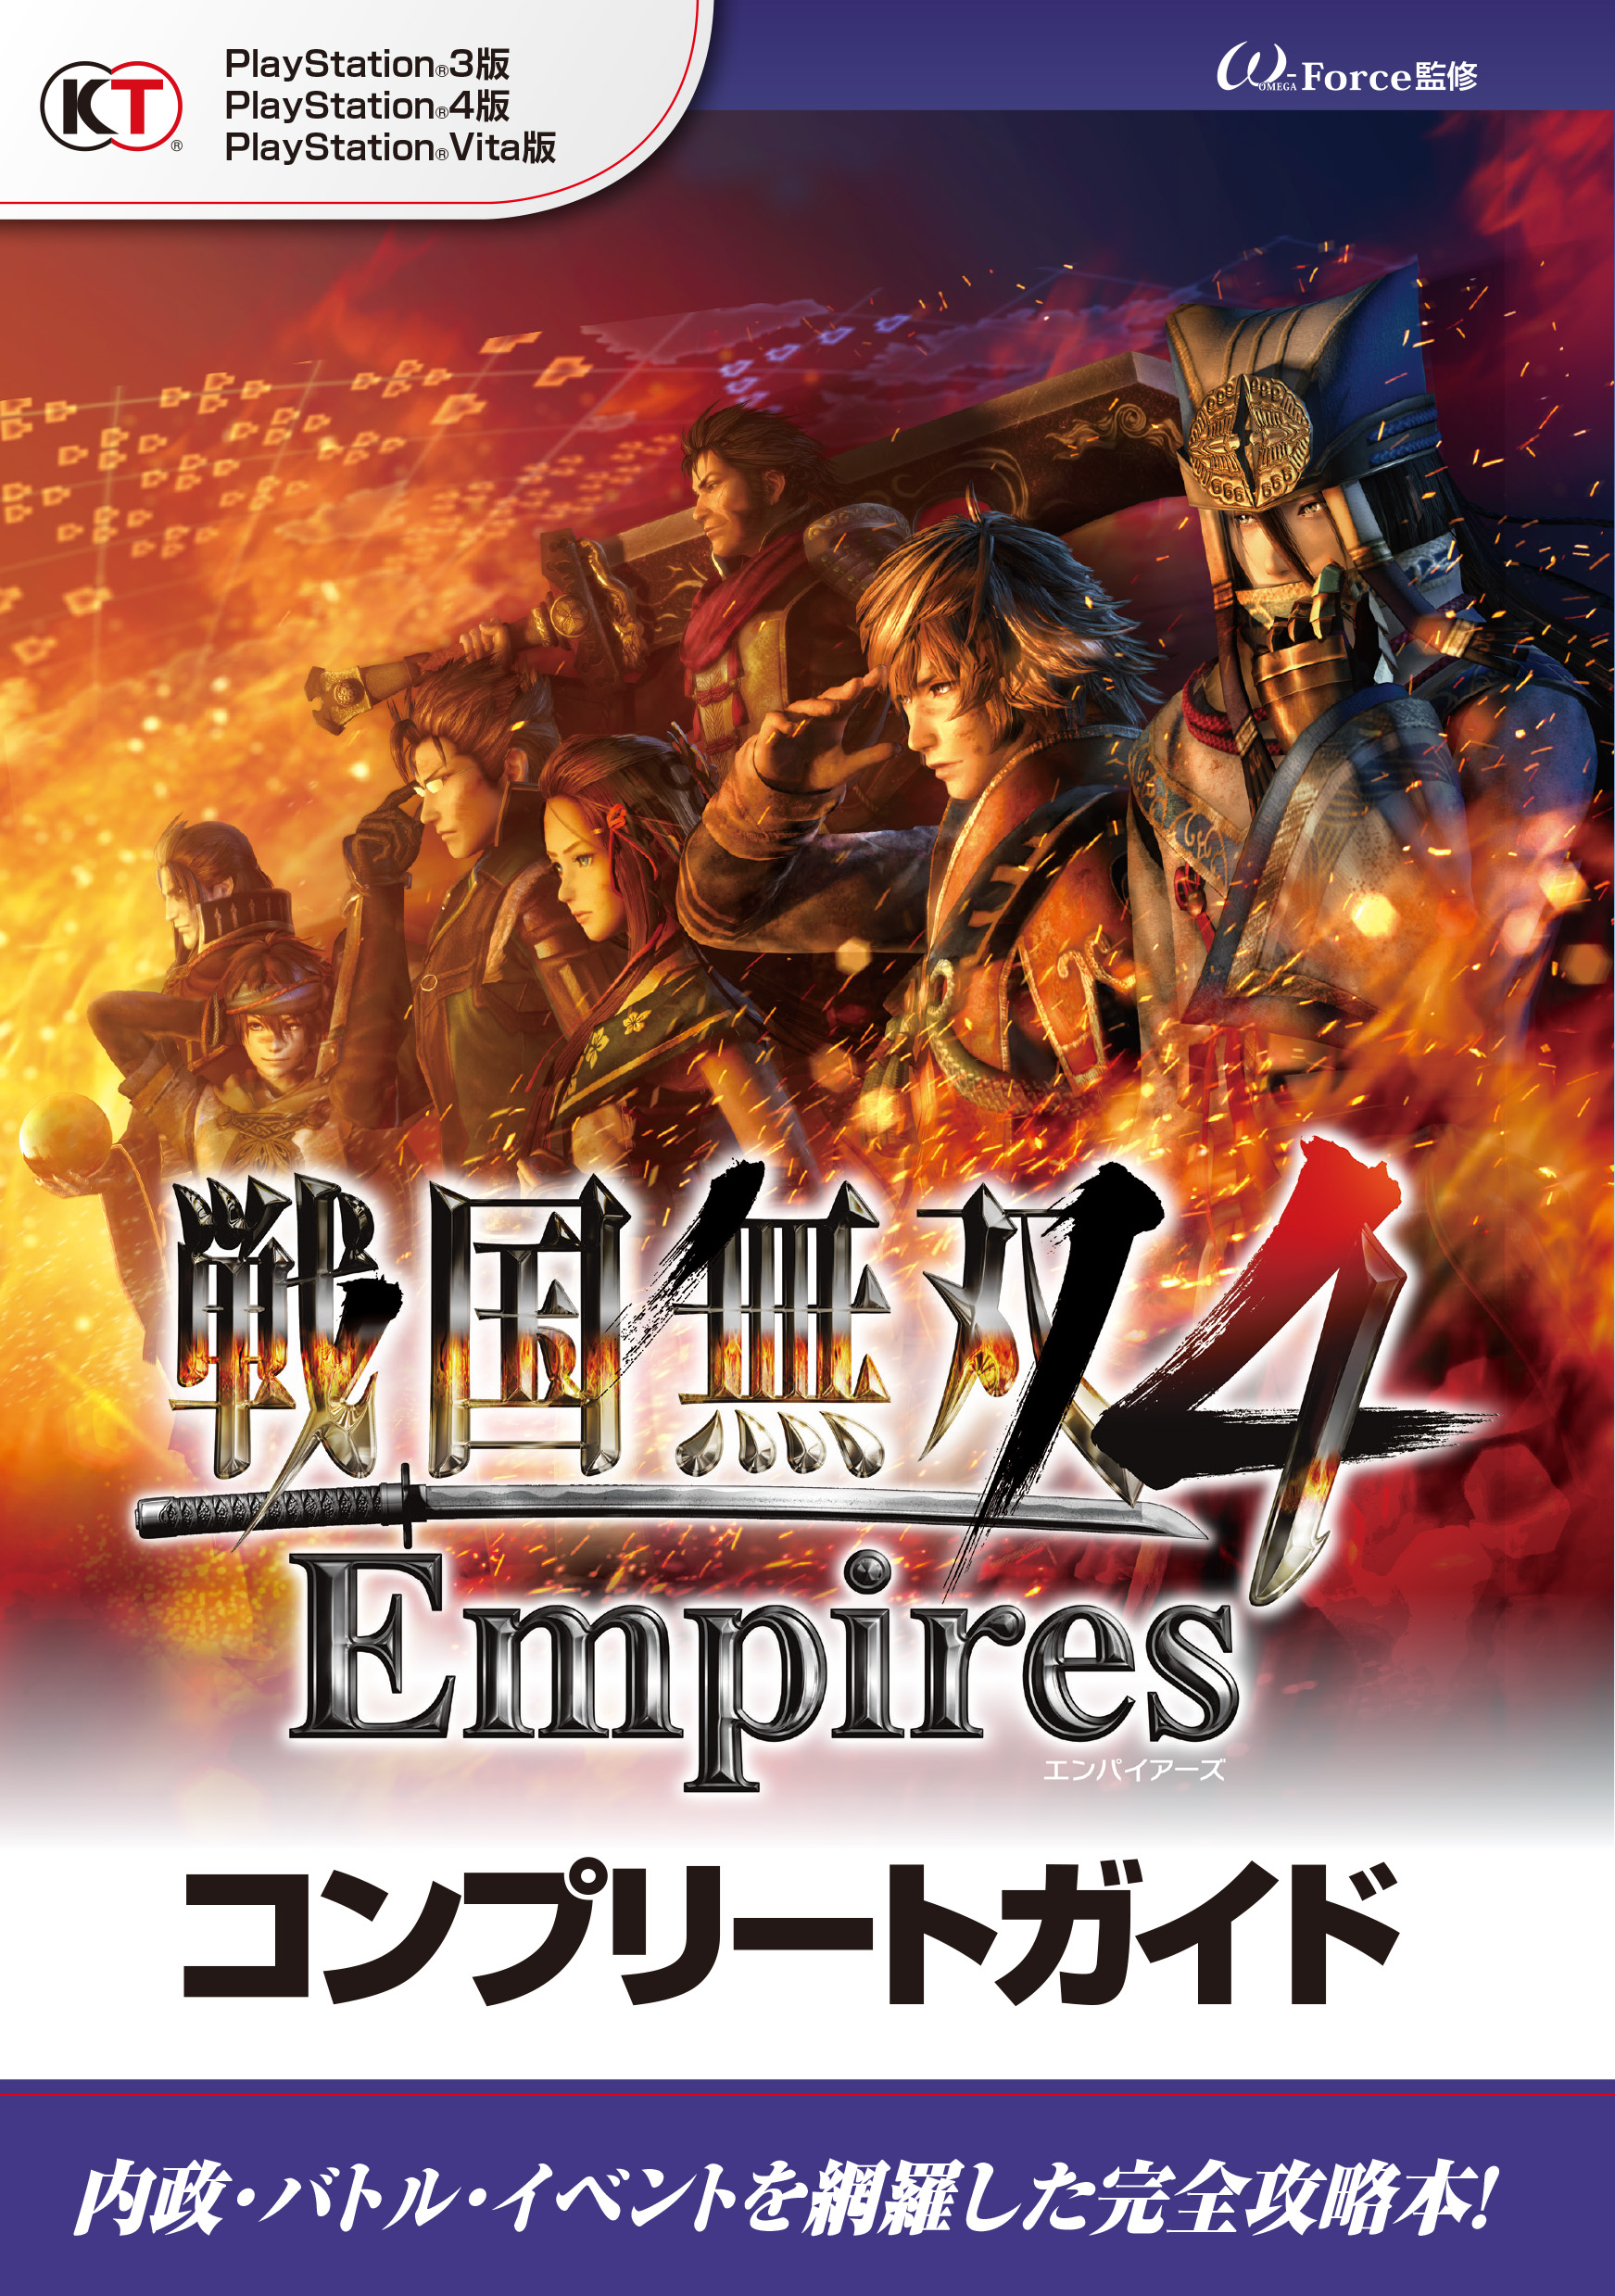 戦国無双４ Empires コンプリートガイド - ω-Force - 漫画・無料試し ...